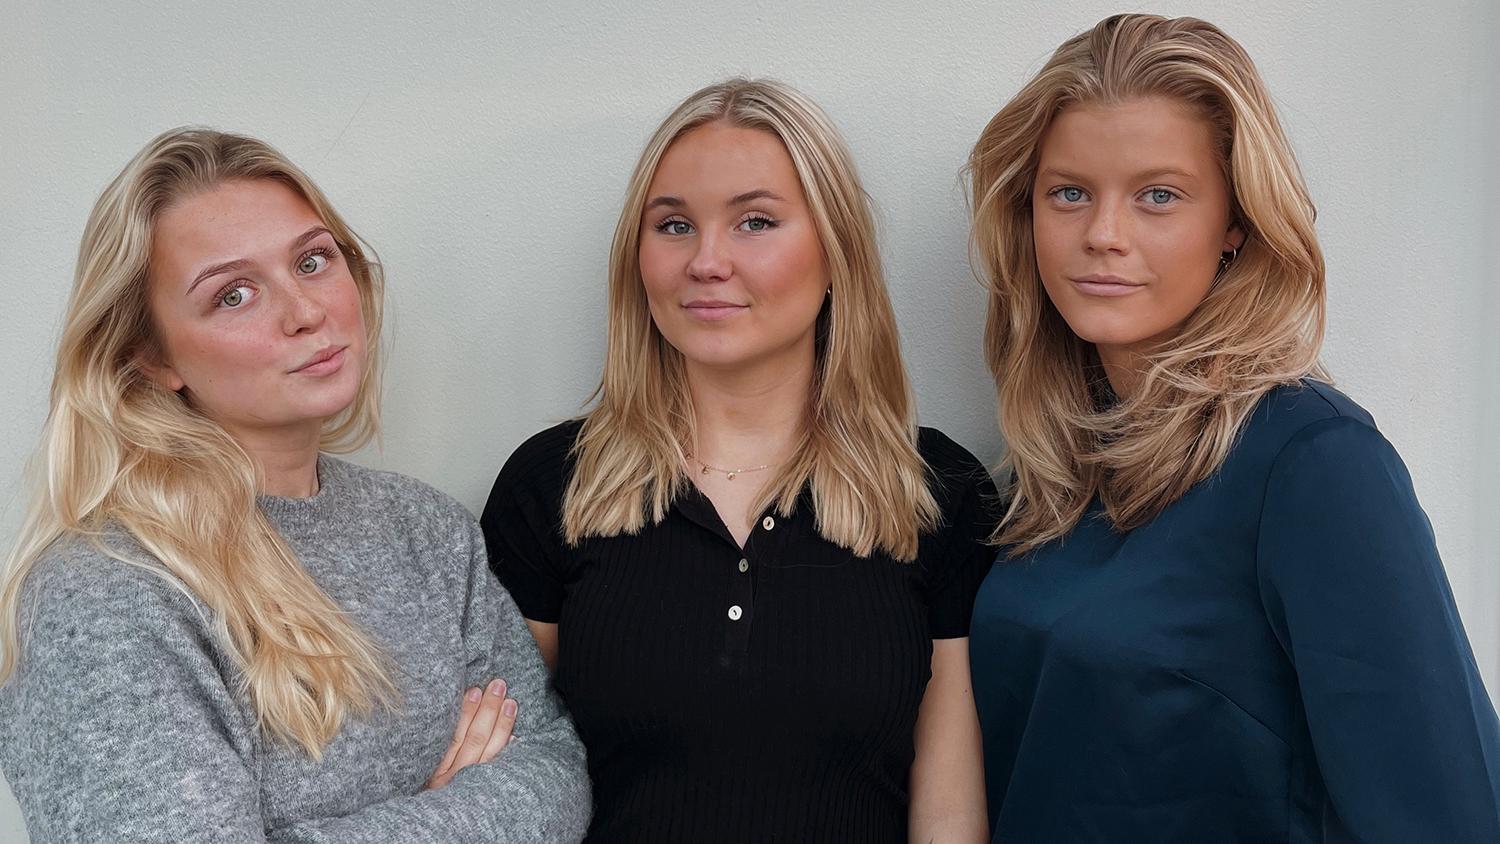 My Henriksson, 18, Linnéa Rask, 19, och Cécile Briès, 18, har tillsammans startat företaget Safedrinks som tagit fram produkter i form av en speciell hårsnodd och snabbtester för att unga kvinnor ska kunna känna sig tryggare på fest eller ute på krogen. 